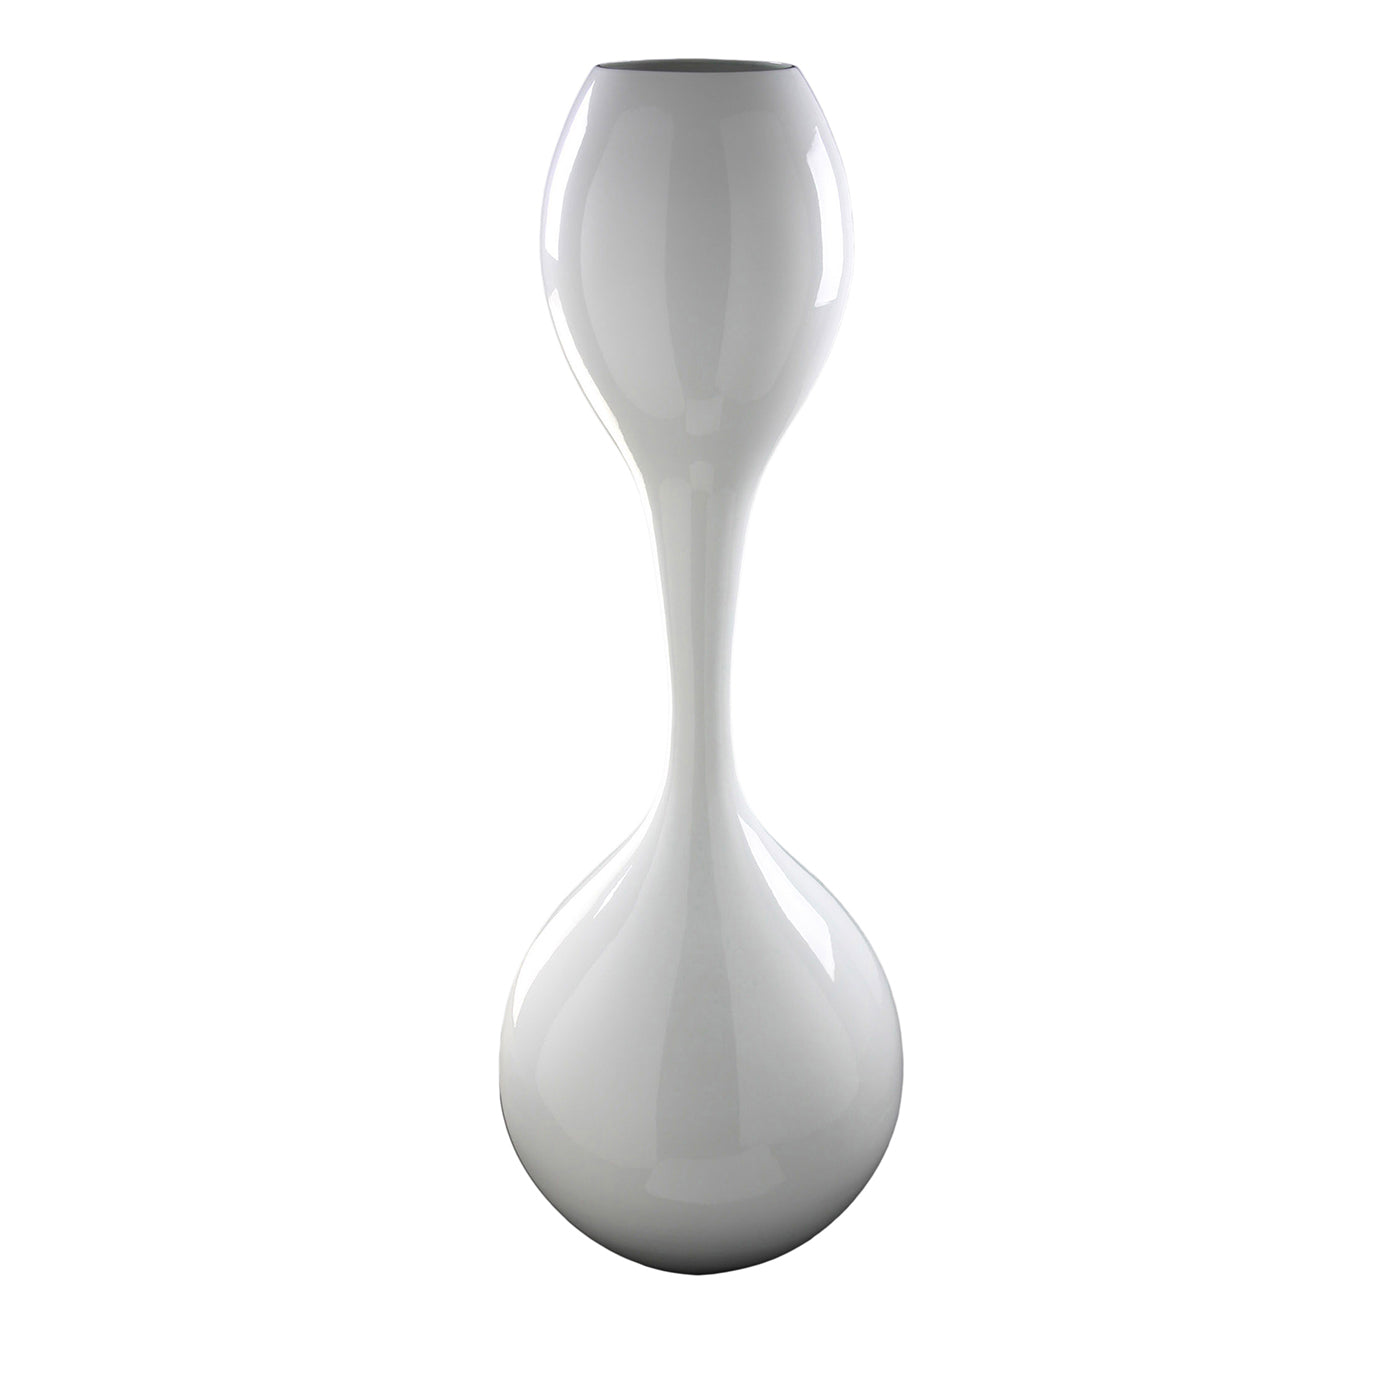 Clessidra Glossy White Decorative Vase - Main view